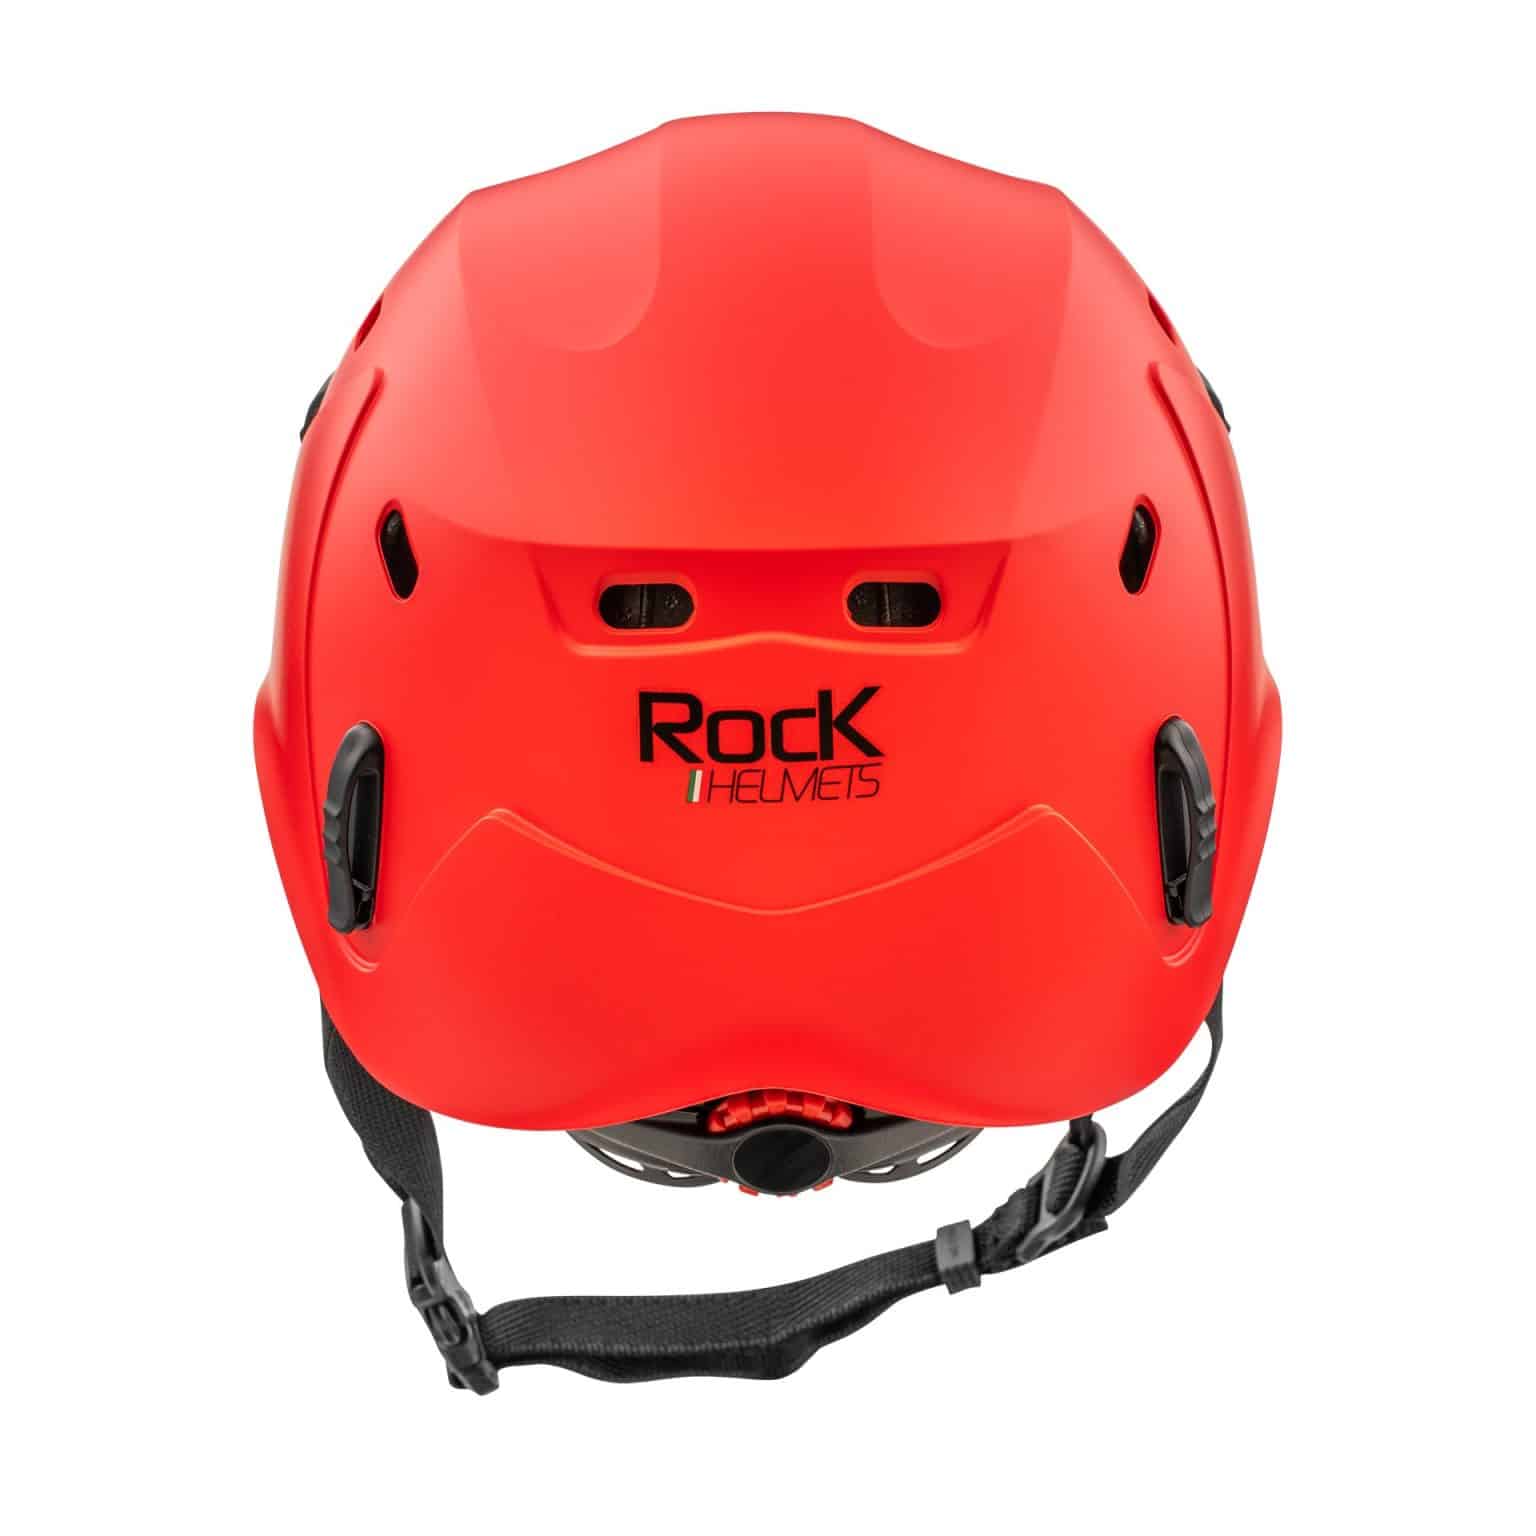 Rock Helmets Goliaקסדת גוליית מאחור